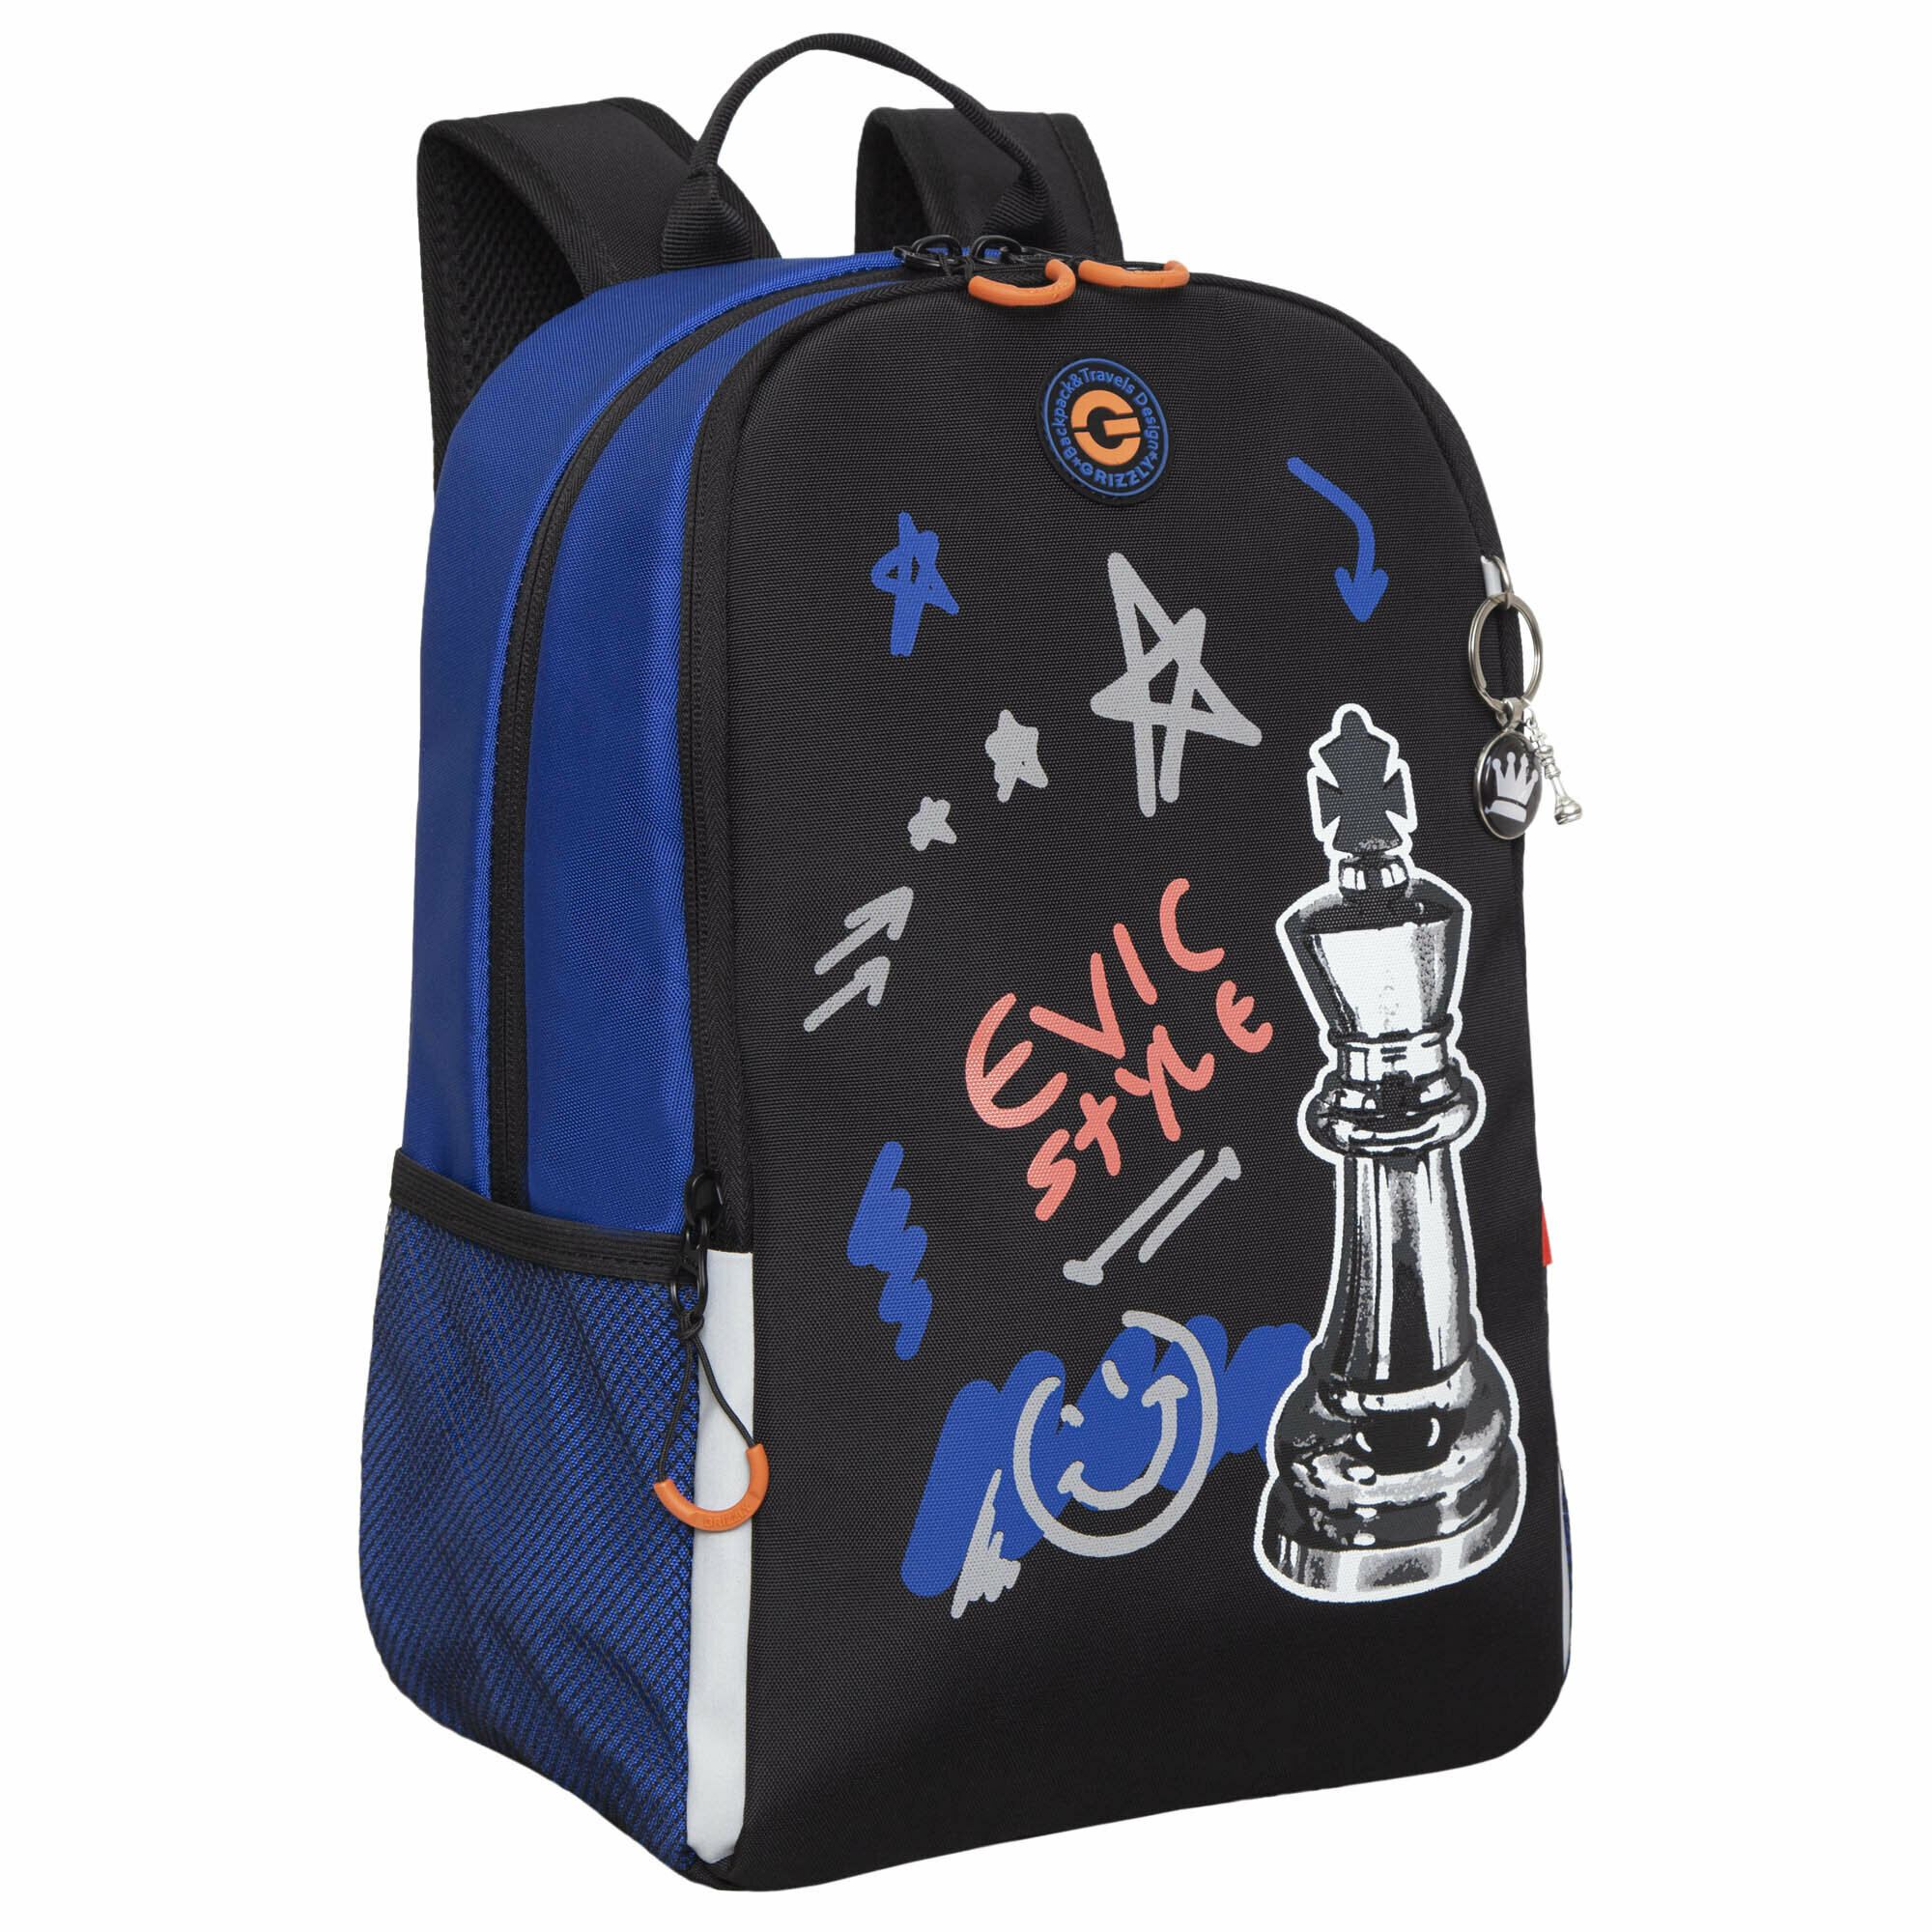 Рюкзак школьный GRIZZLY легкий с жесткой спинкой, двумя отделениями, для мальчика RB-351-6/1